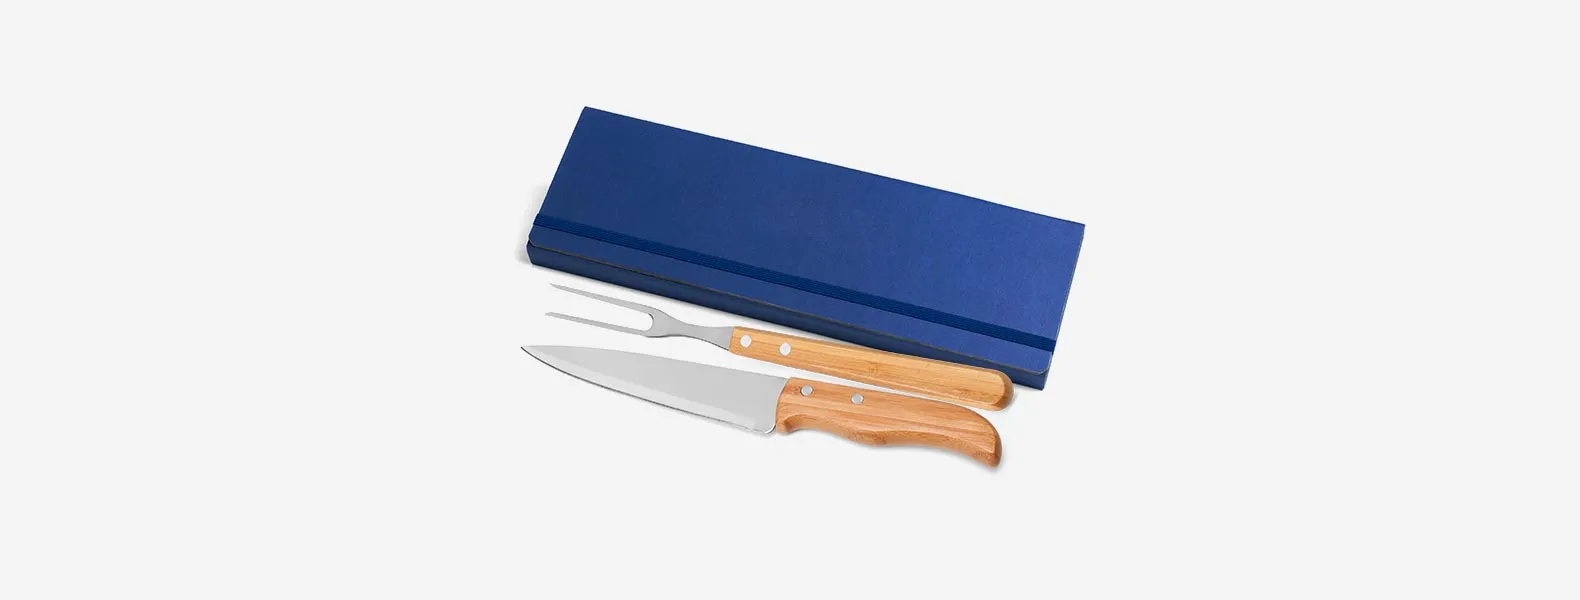 Conjunto composto por uma faca 7” e um garfo trinchante, ambos com cabos em bambu e lâminas em aço Inox com rebites resistentes. Estão organizados em uma pasta azul com elásticos.